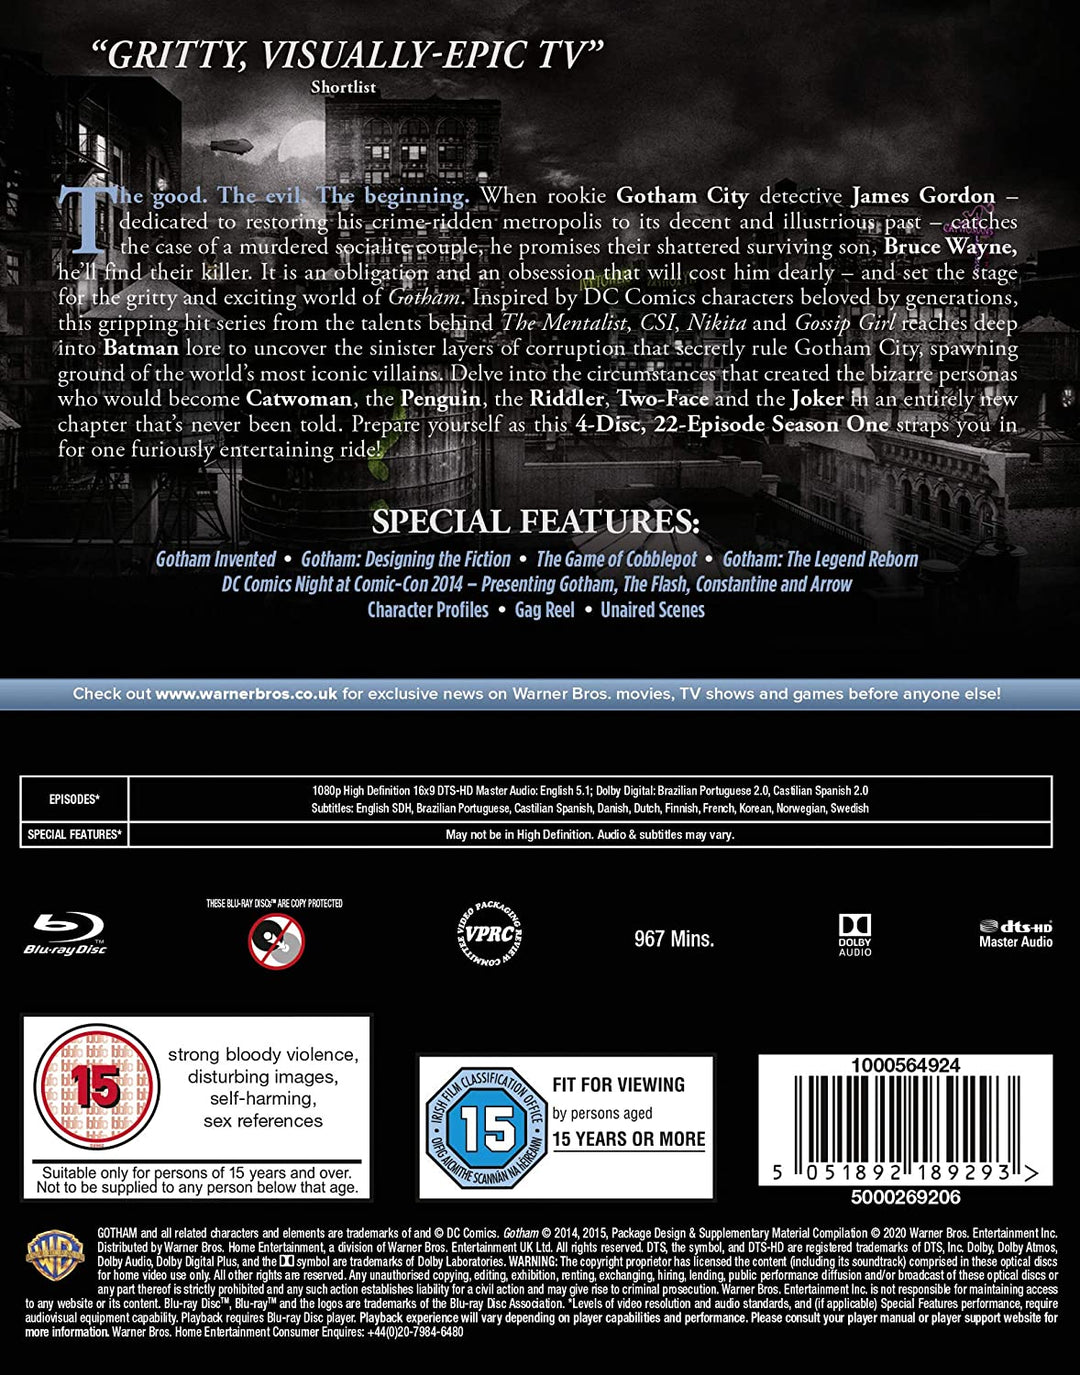 Gotham - Staffel 1 [Blu-ray] [2014] [Region frei]